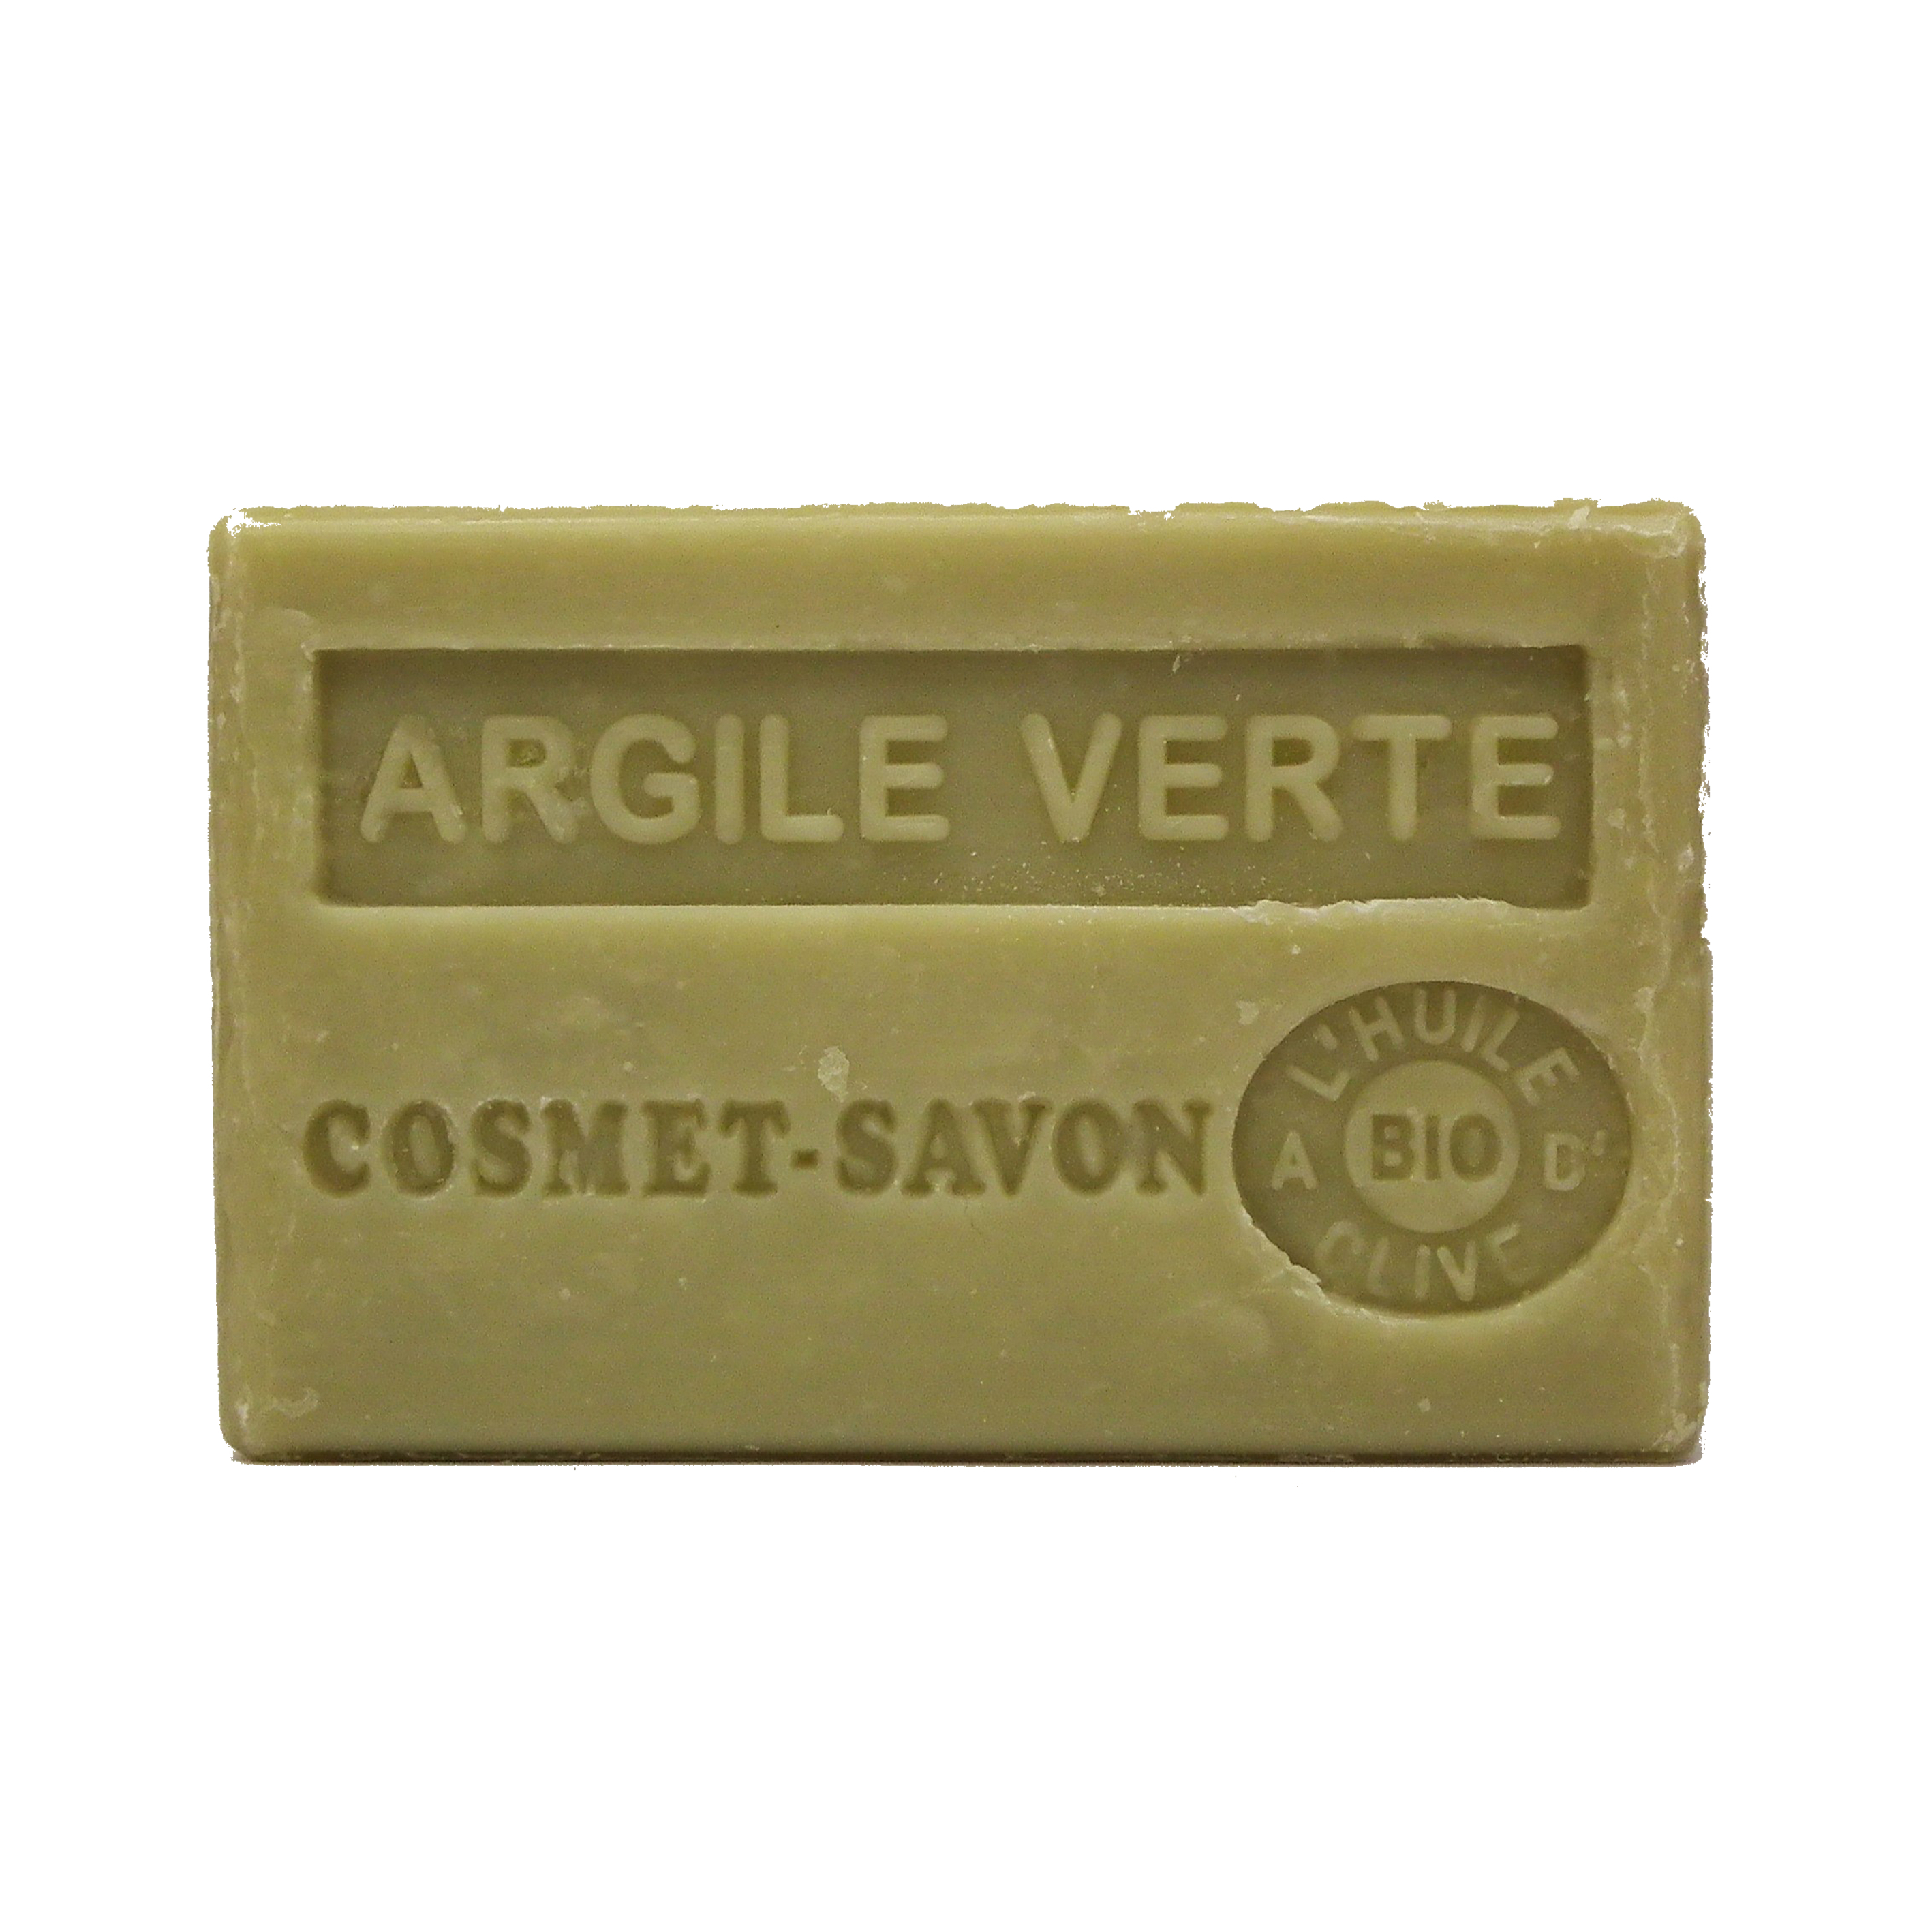 argile-verte-savon-125gr-au-beurre-de-karite-bio-cosmet-savon-3665205006089-face-JPEG